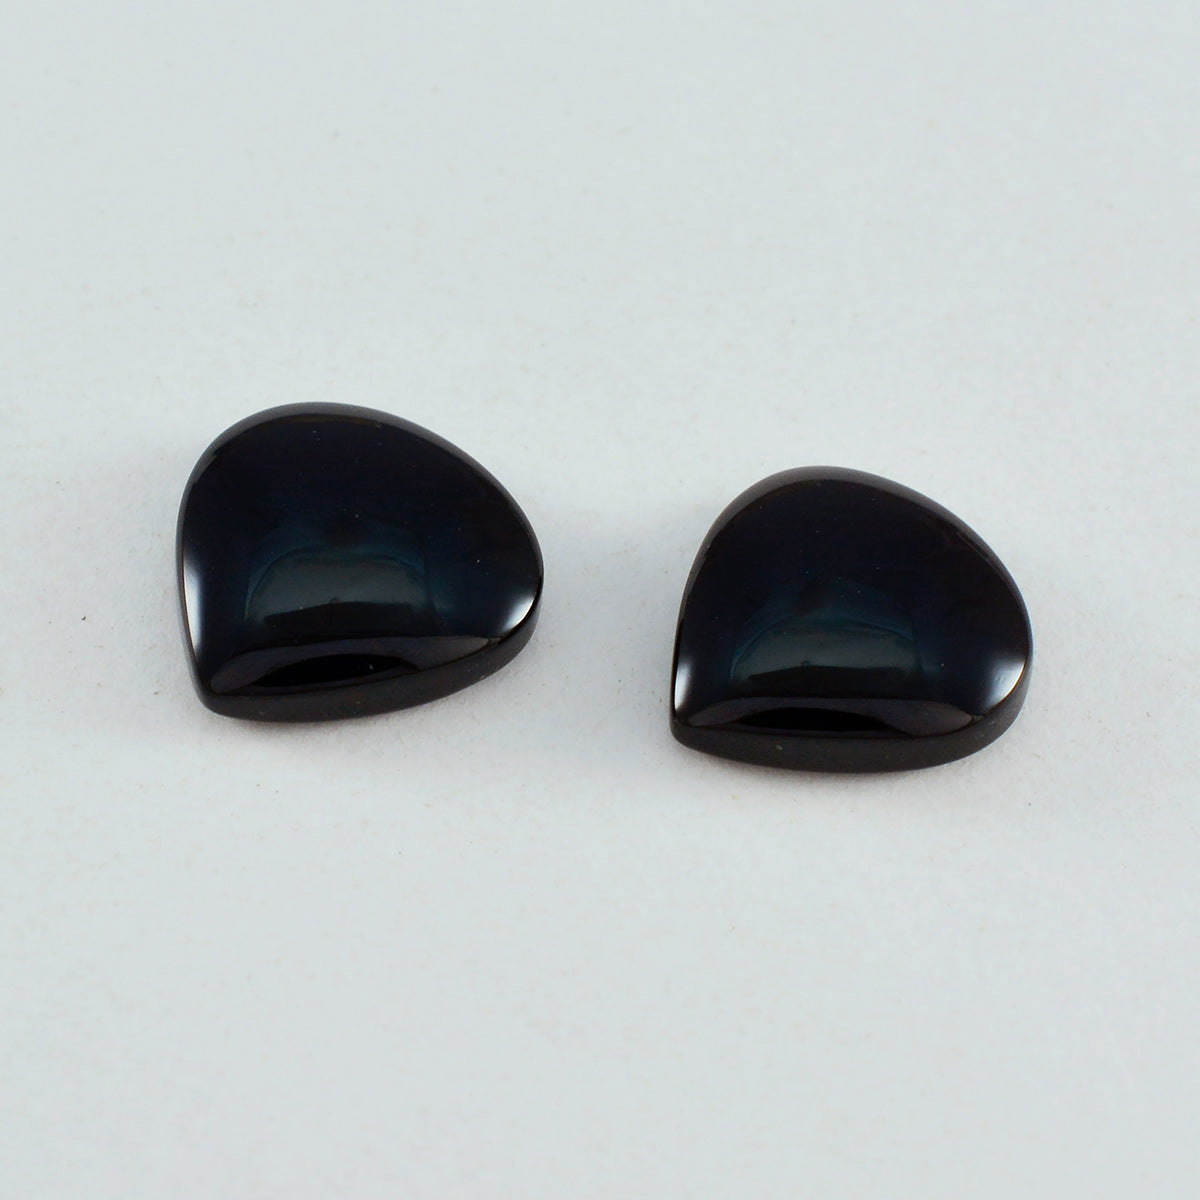 Riyogems 1 Stück schwarzer Onyx-Cabochon, 13 x 13 mm, Herzform, A-Qualität, lose Edelsteine